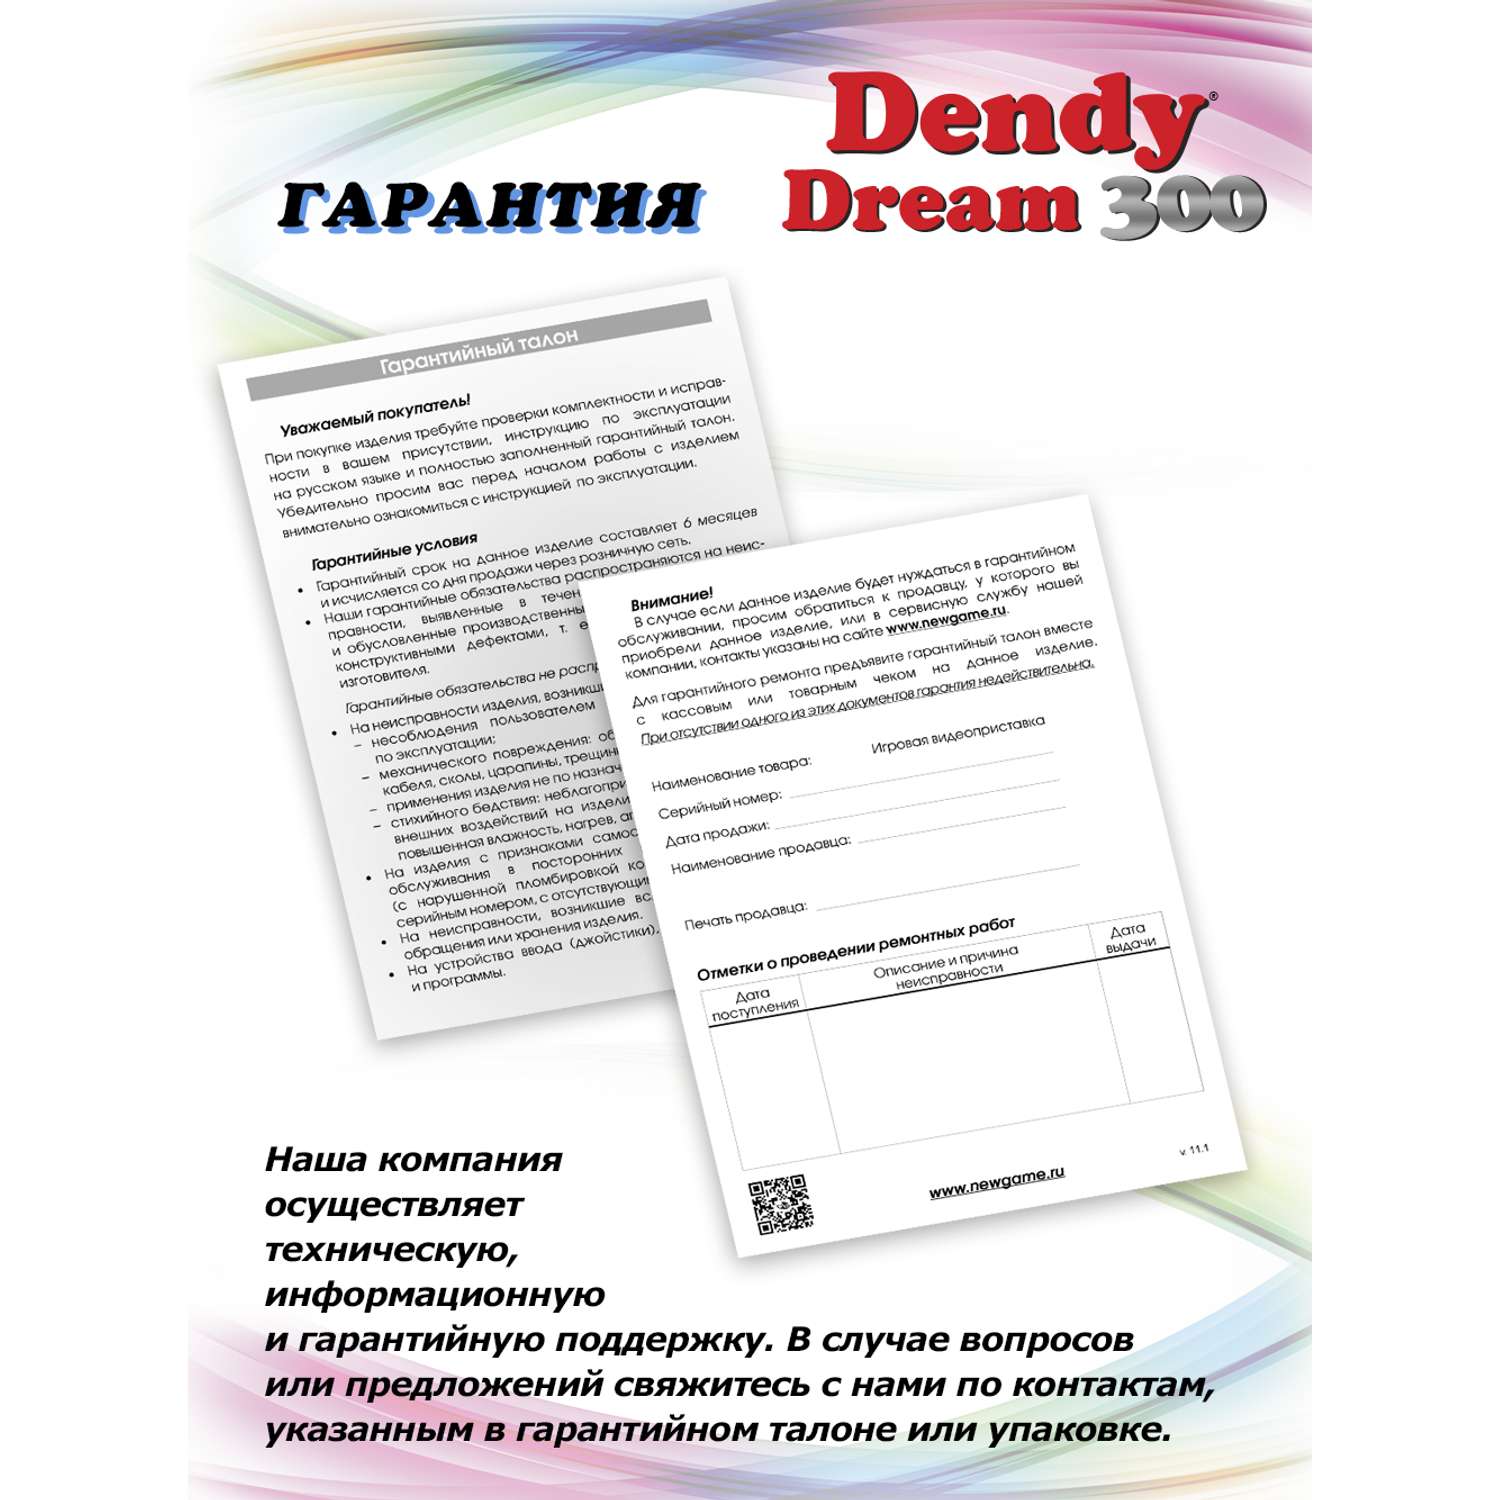 Игровая приставка Dendy Dream 300 игр (8-бит) - фото 9